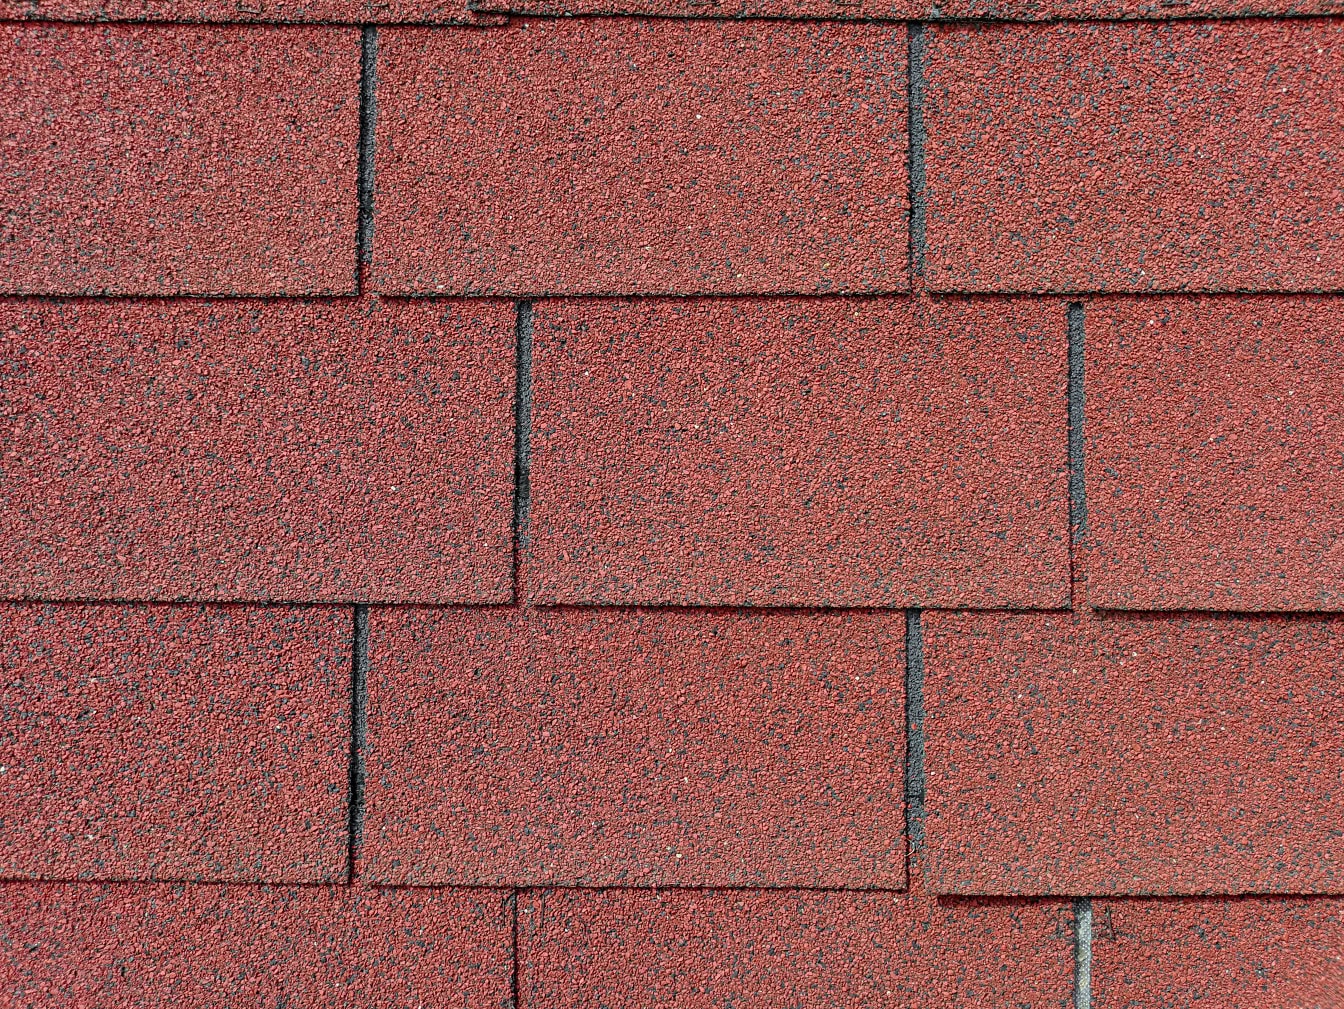 瀝青、ゴム、再生プラスチックの混合物で作られた長方形の暗赤褐色のシングル屋根の質感